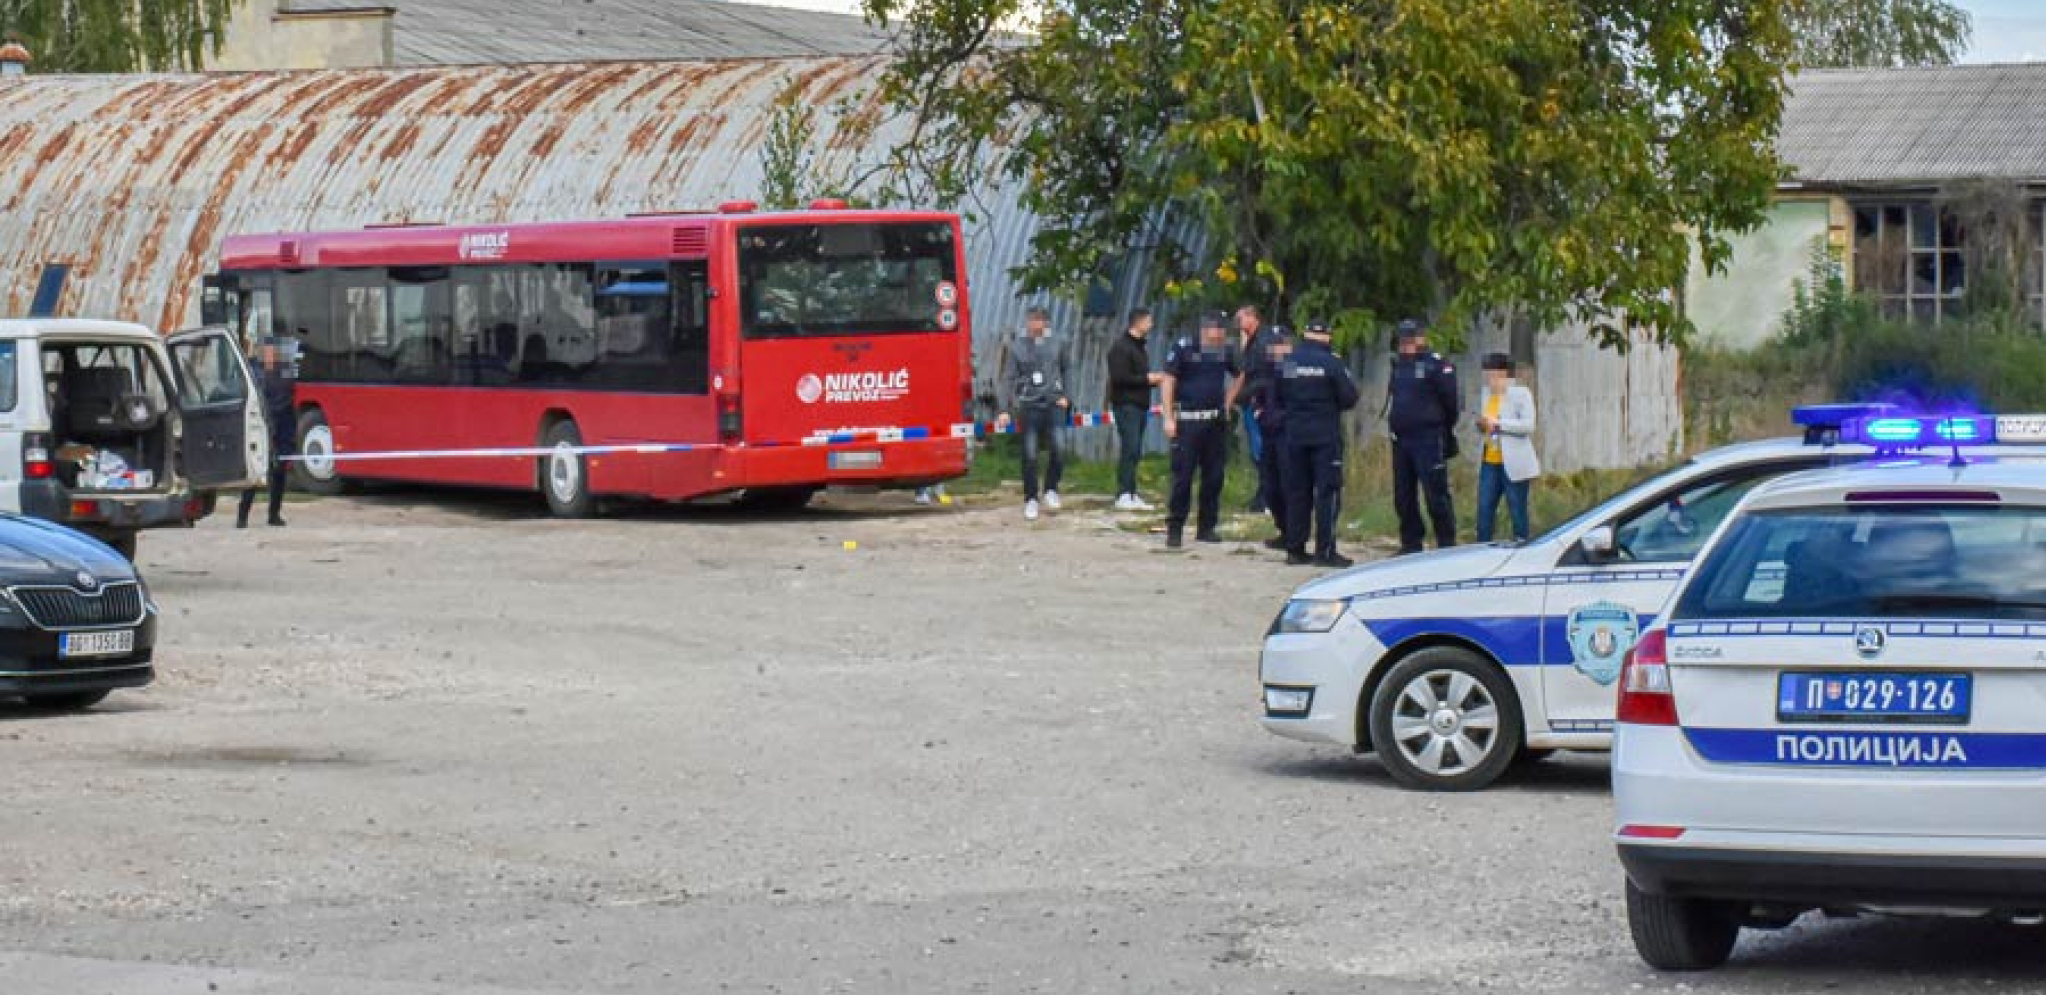 DRAMA U KRAGUJEVCU Stigla dojava o bombi u autobusu, traga se za osobom koja je uputila pretnje